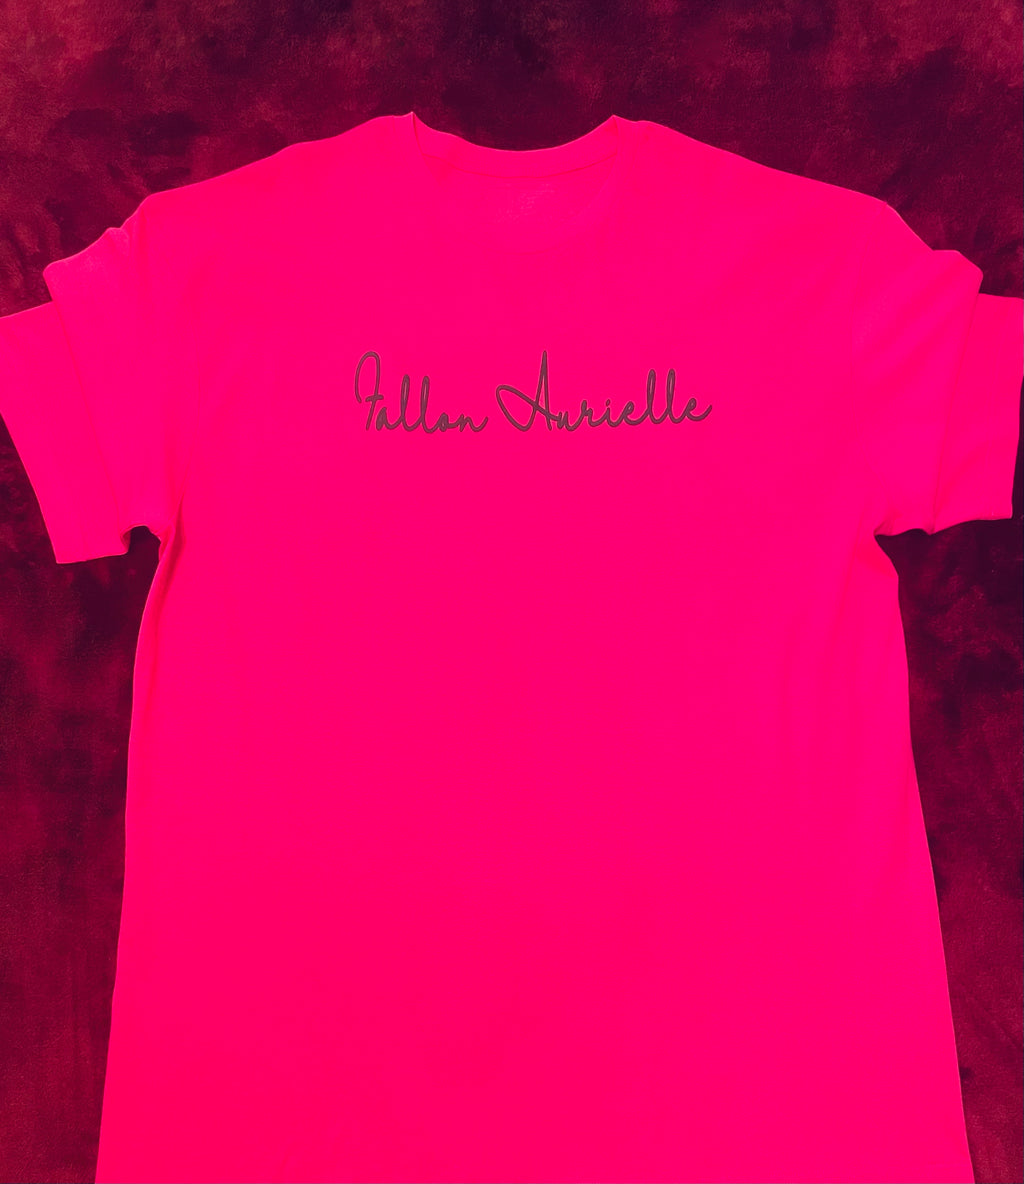 Fallon Aurielle Unisex Signature T-Shirt (Neon Pink & Black)